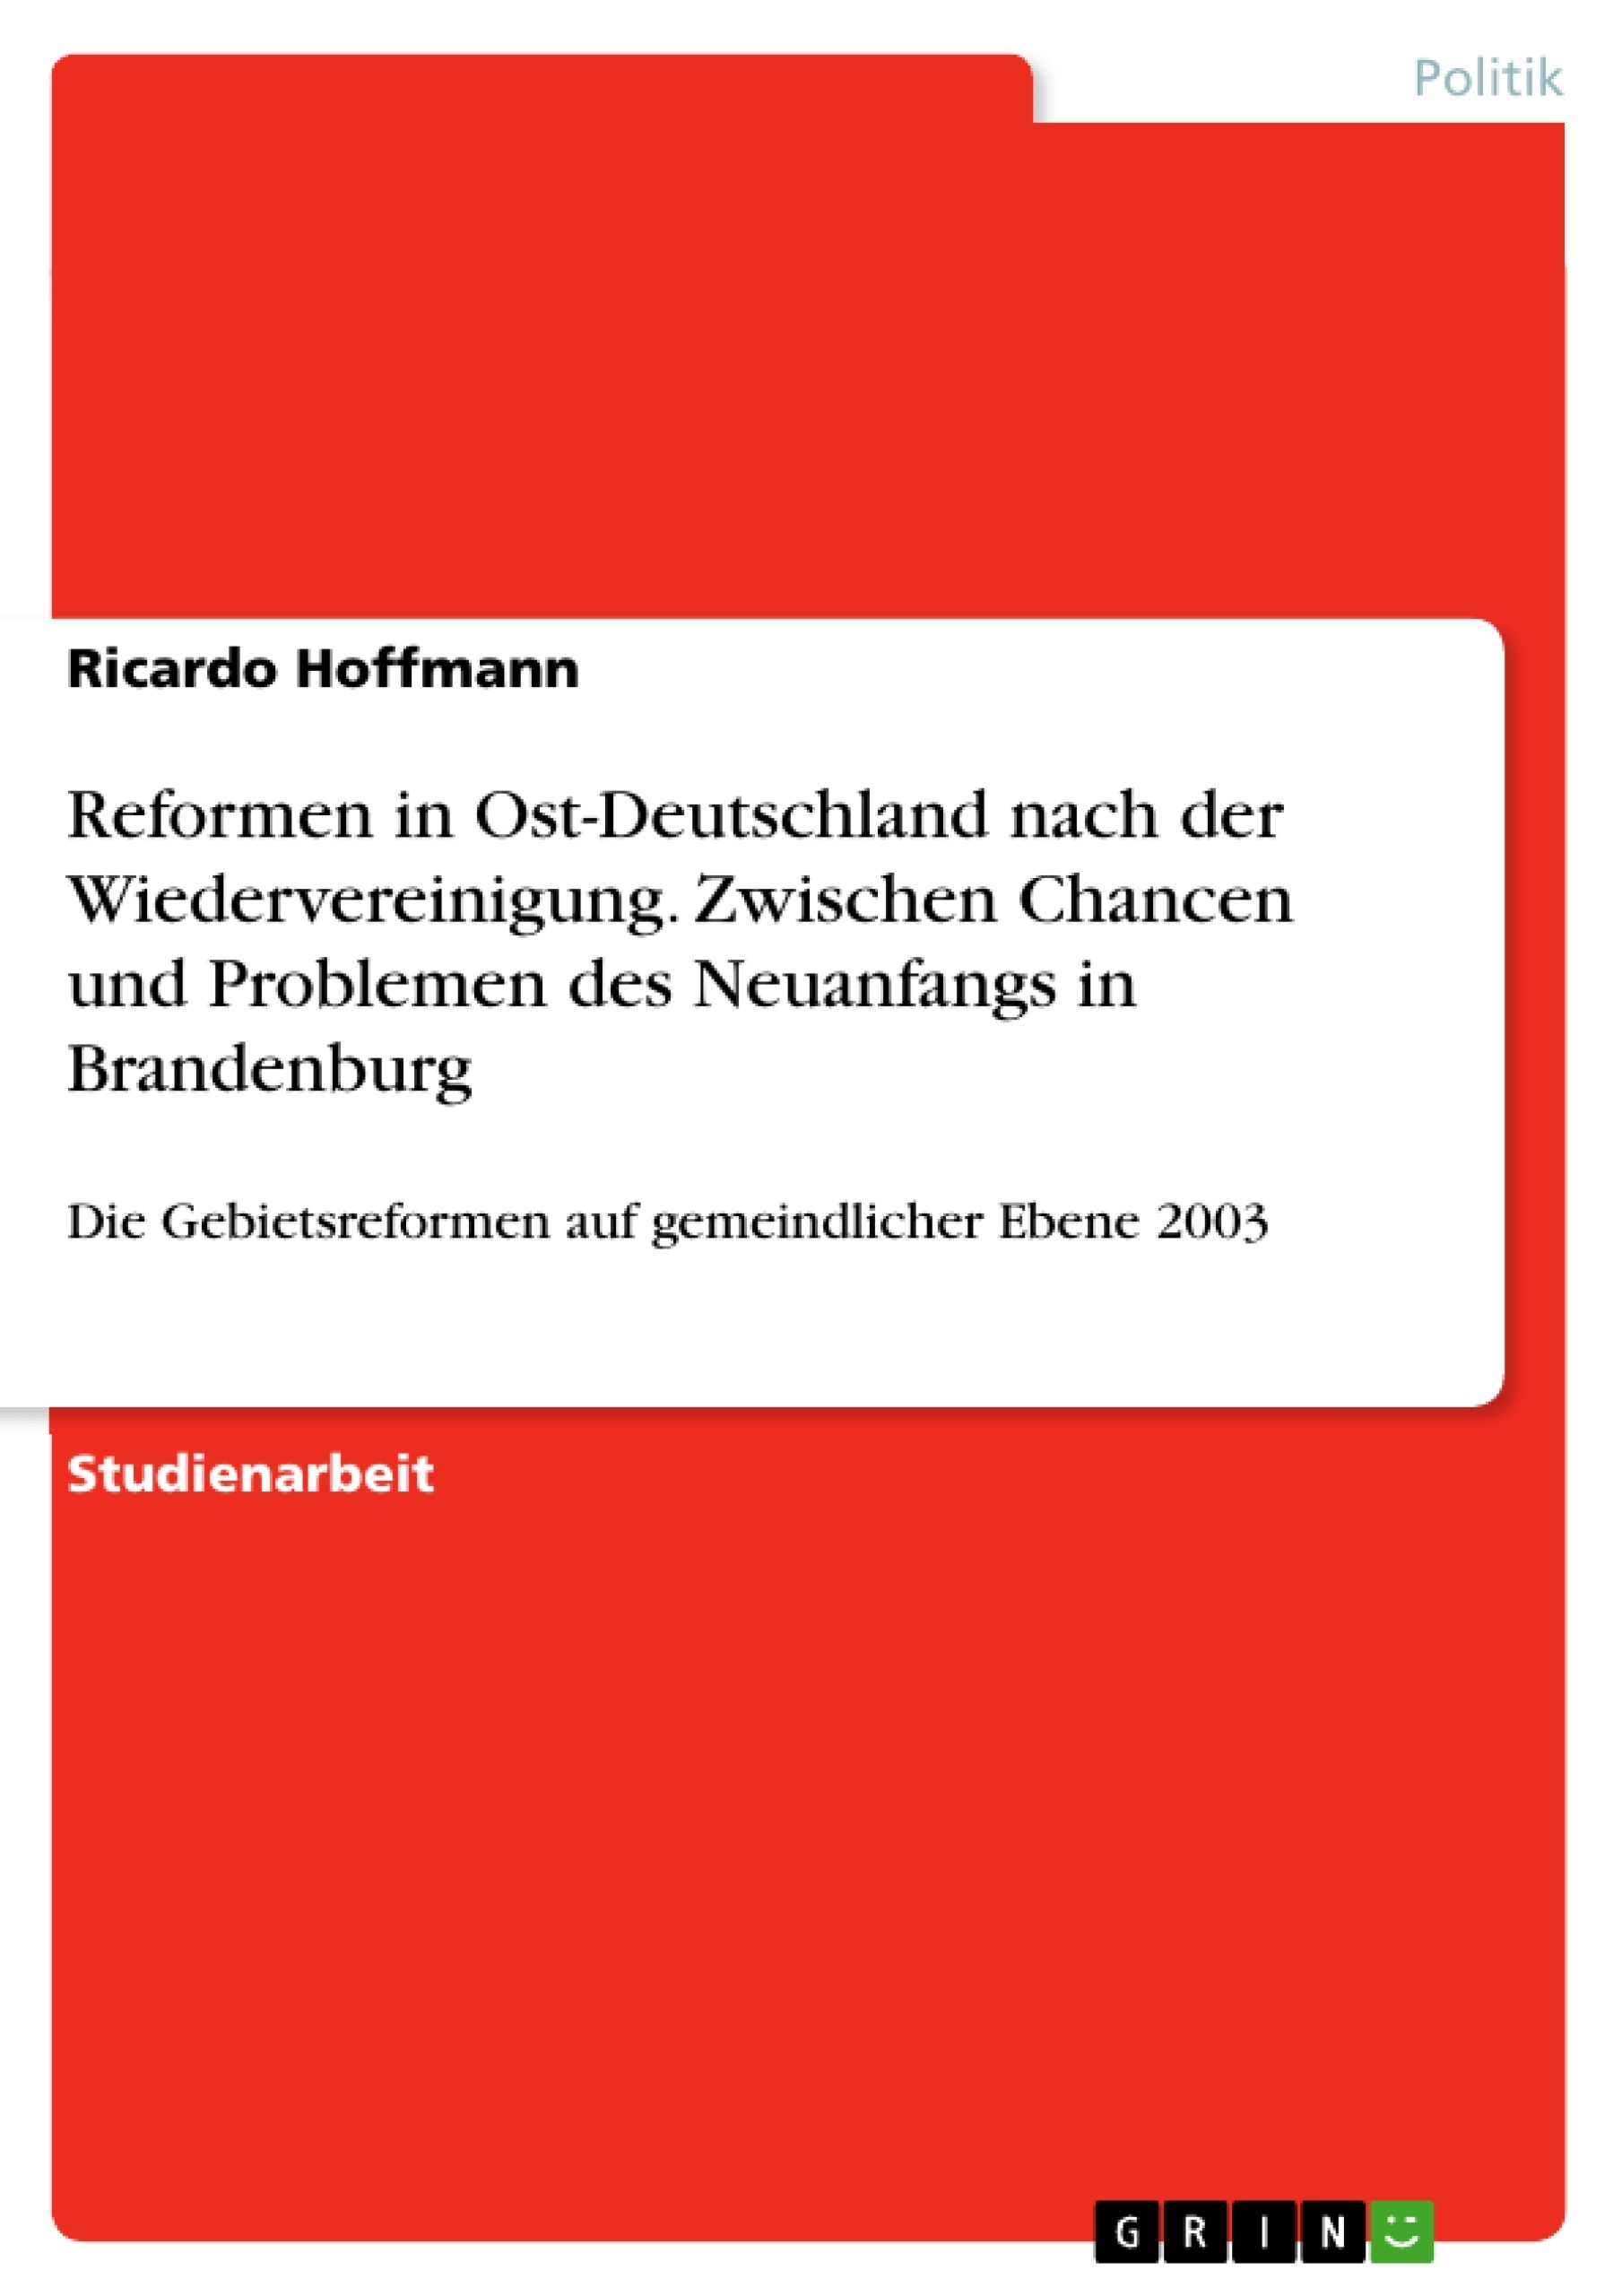 Título: Reformen in Ost-Deutschland nach der Wiedervereinigung. Zwischen Chancen und Problemen des Neuanfangs in Brandenburg